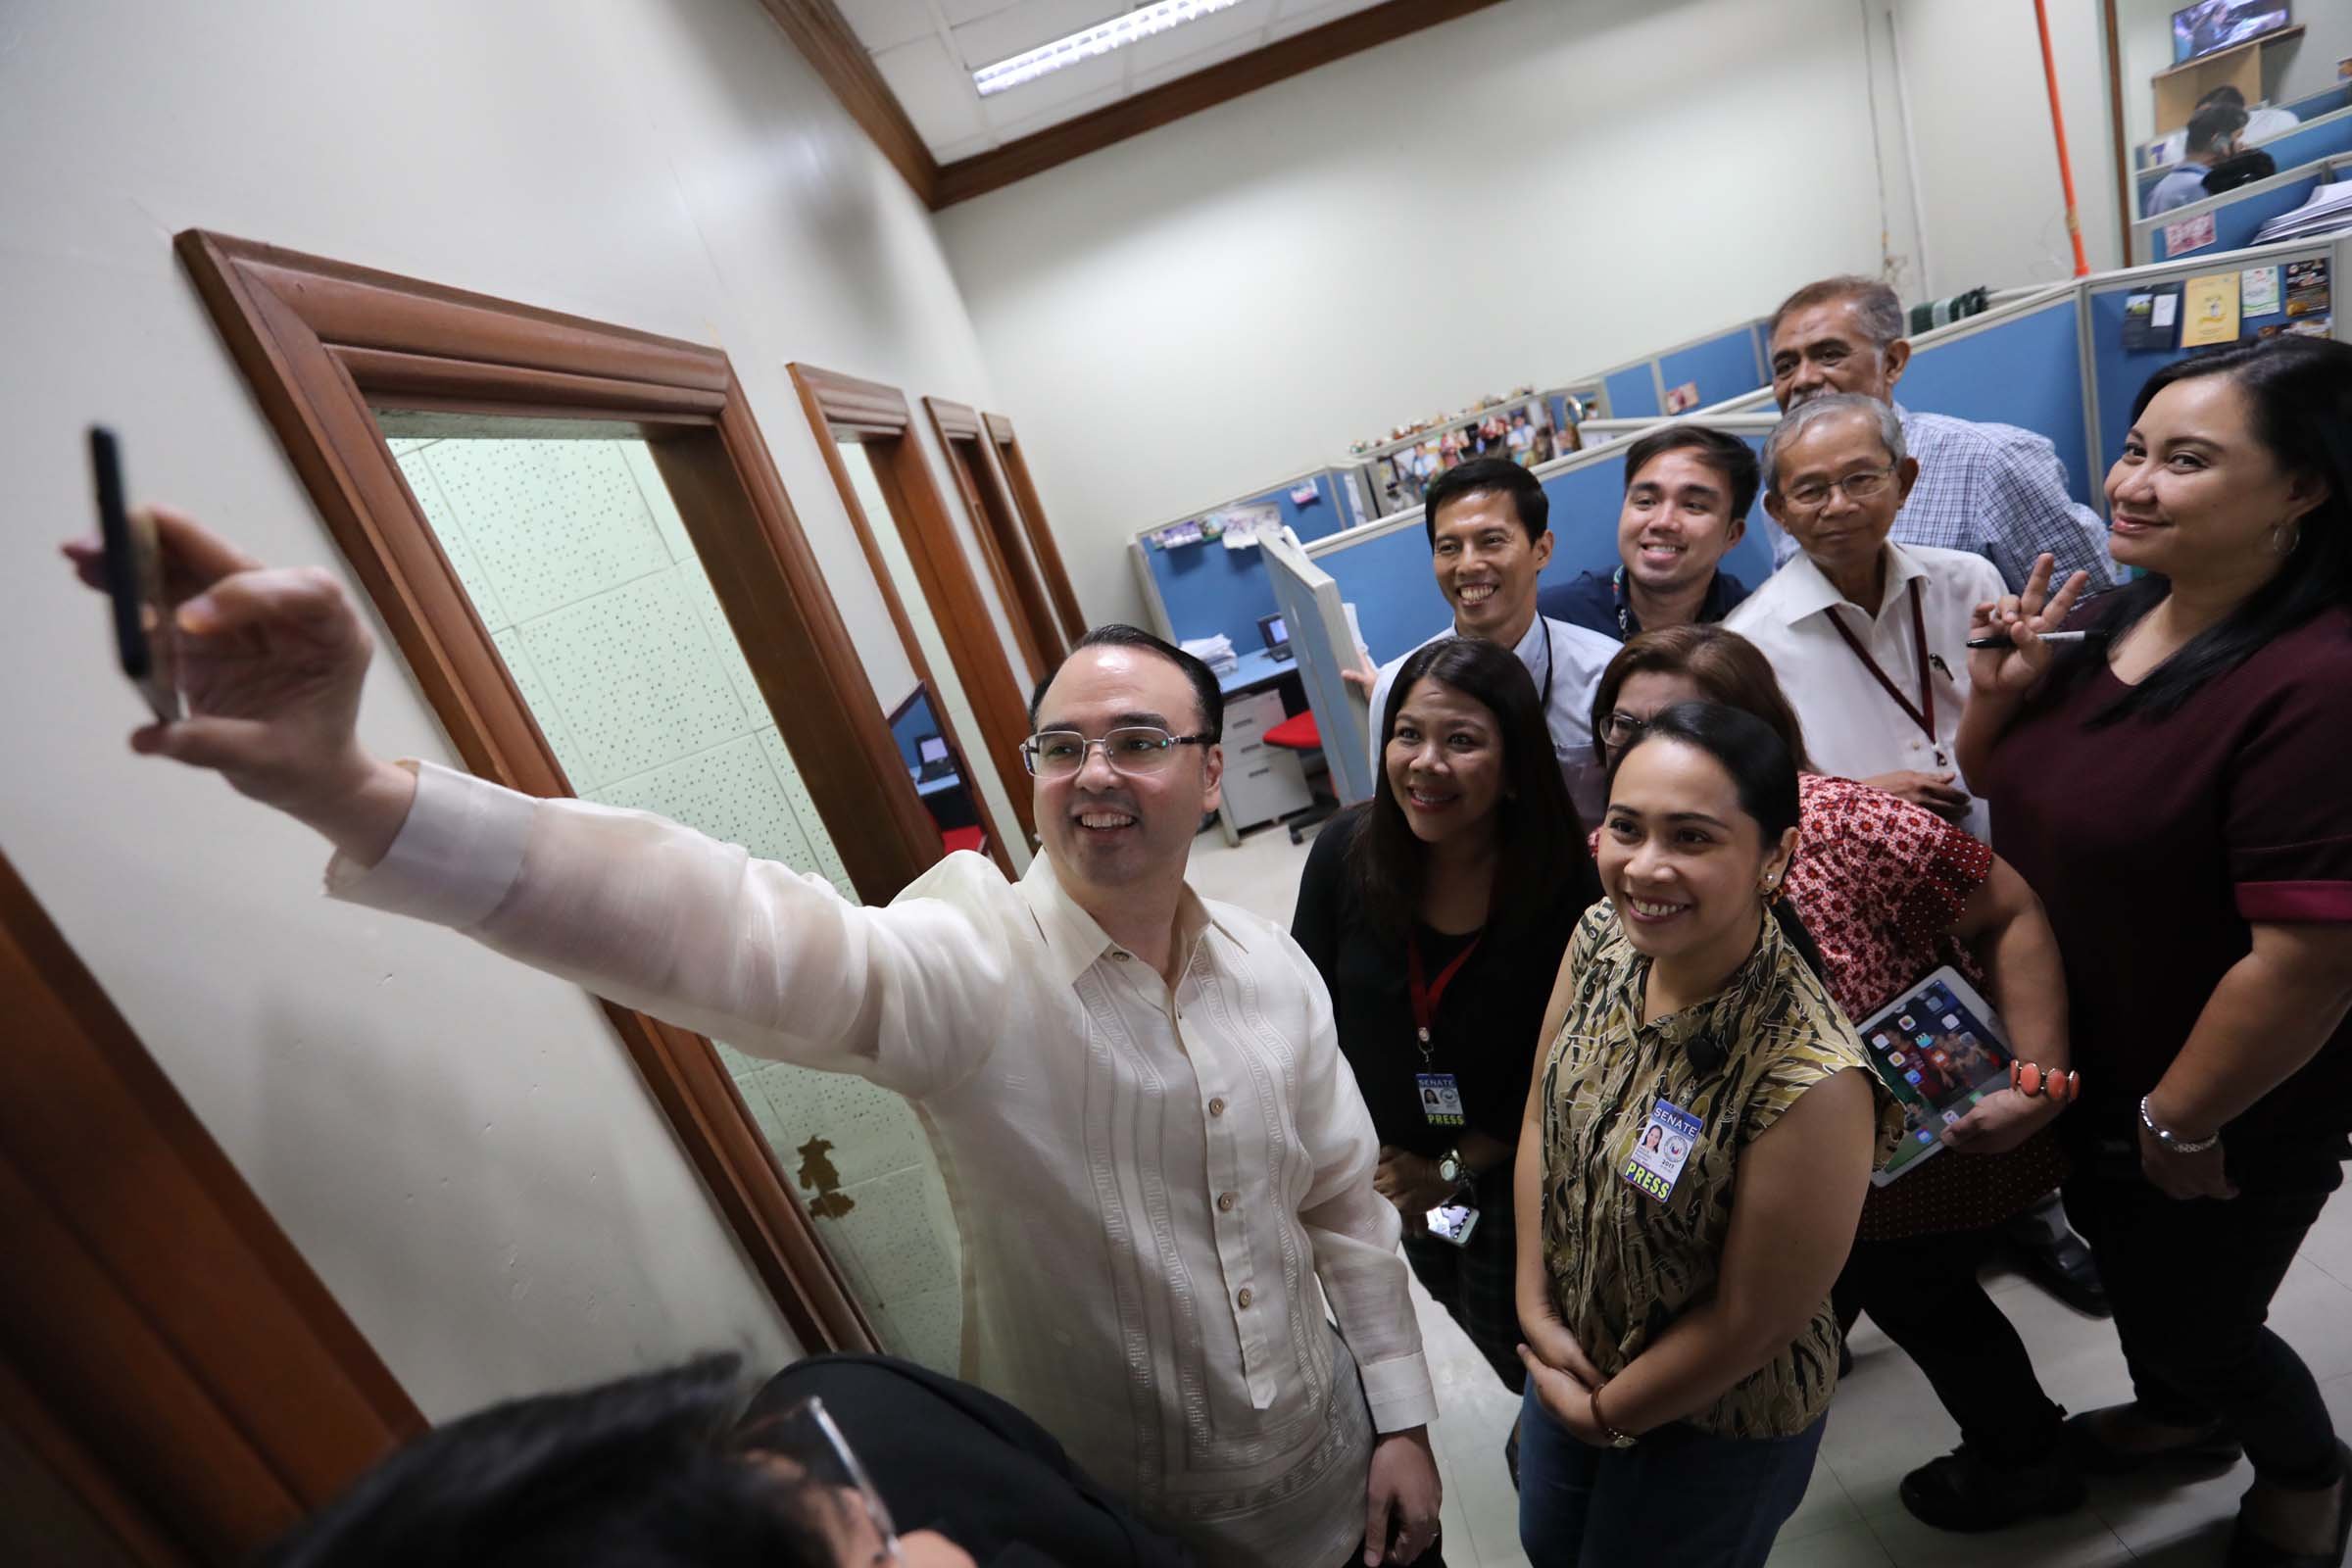 ALL SMILES. Sen. Cayetano takes a selfie with Senate media